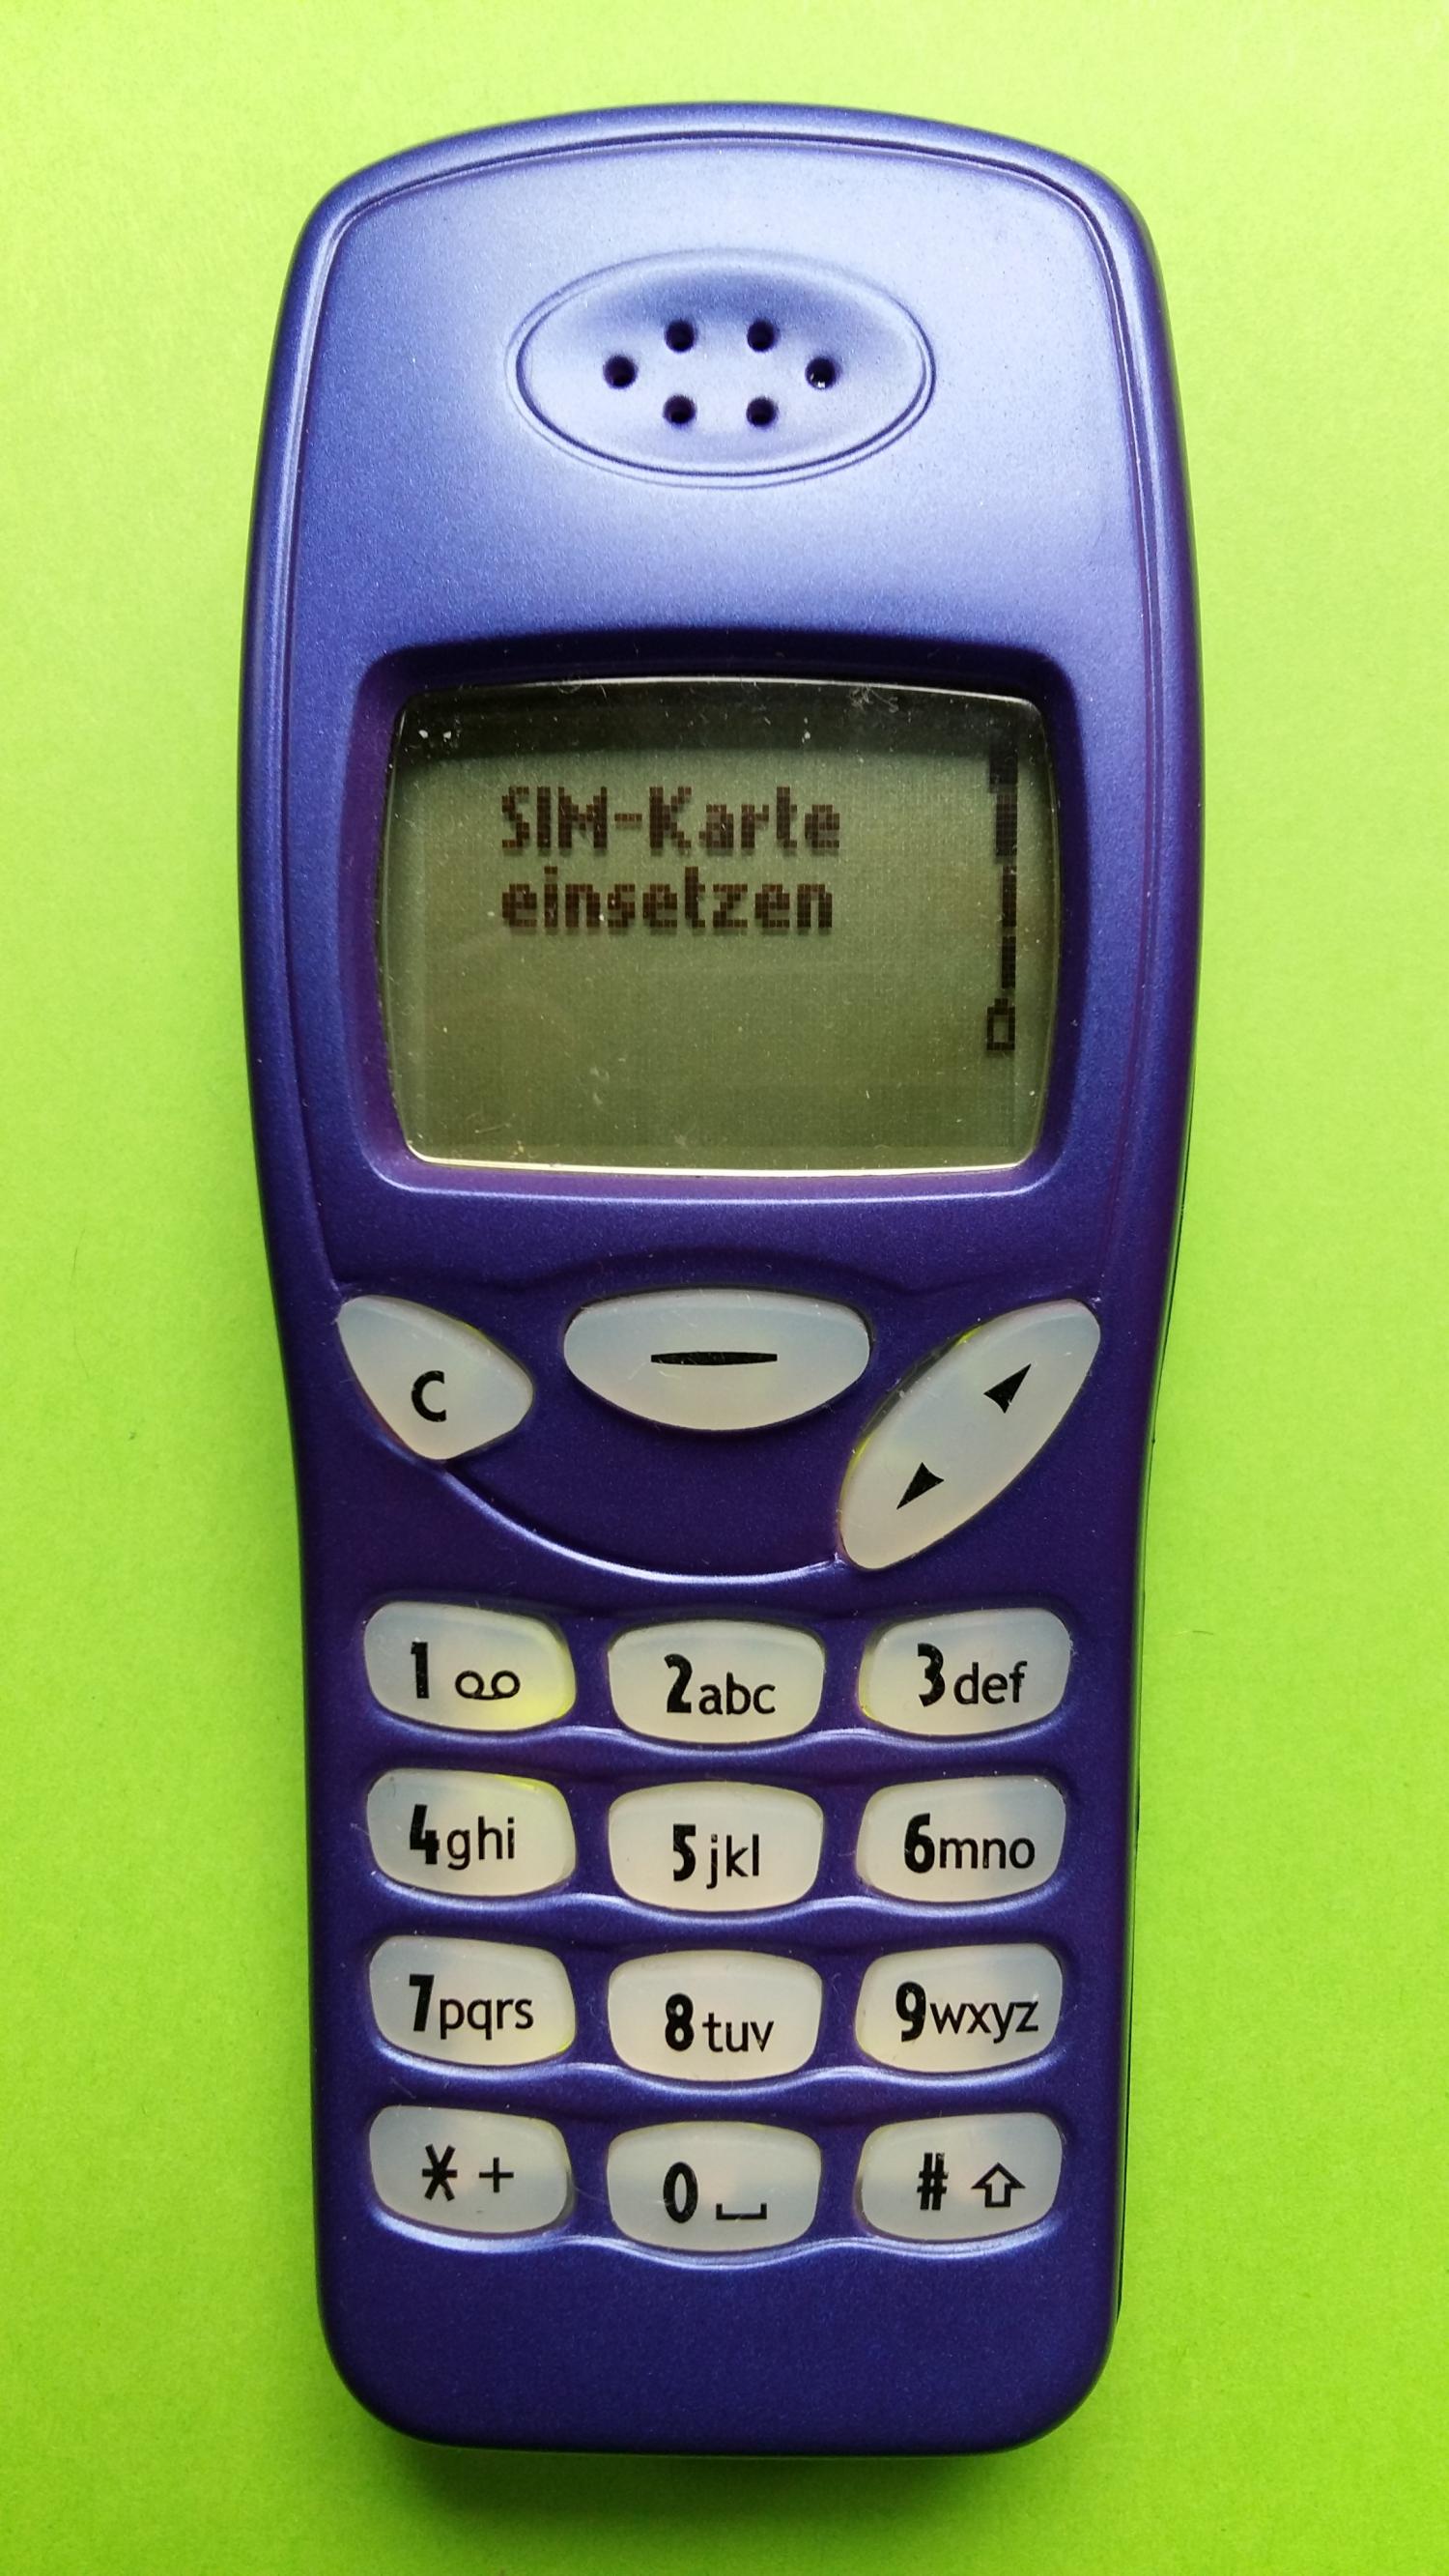 image-7303158-Nokia 3210 (24)1.jpg